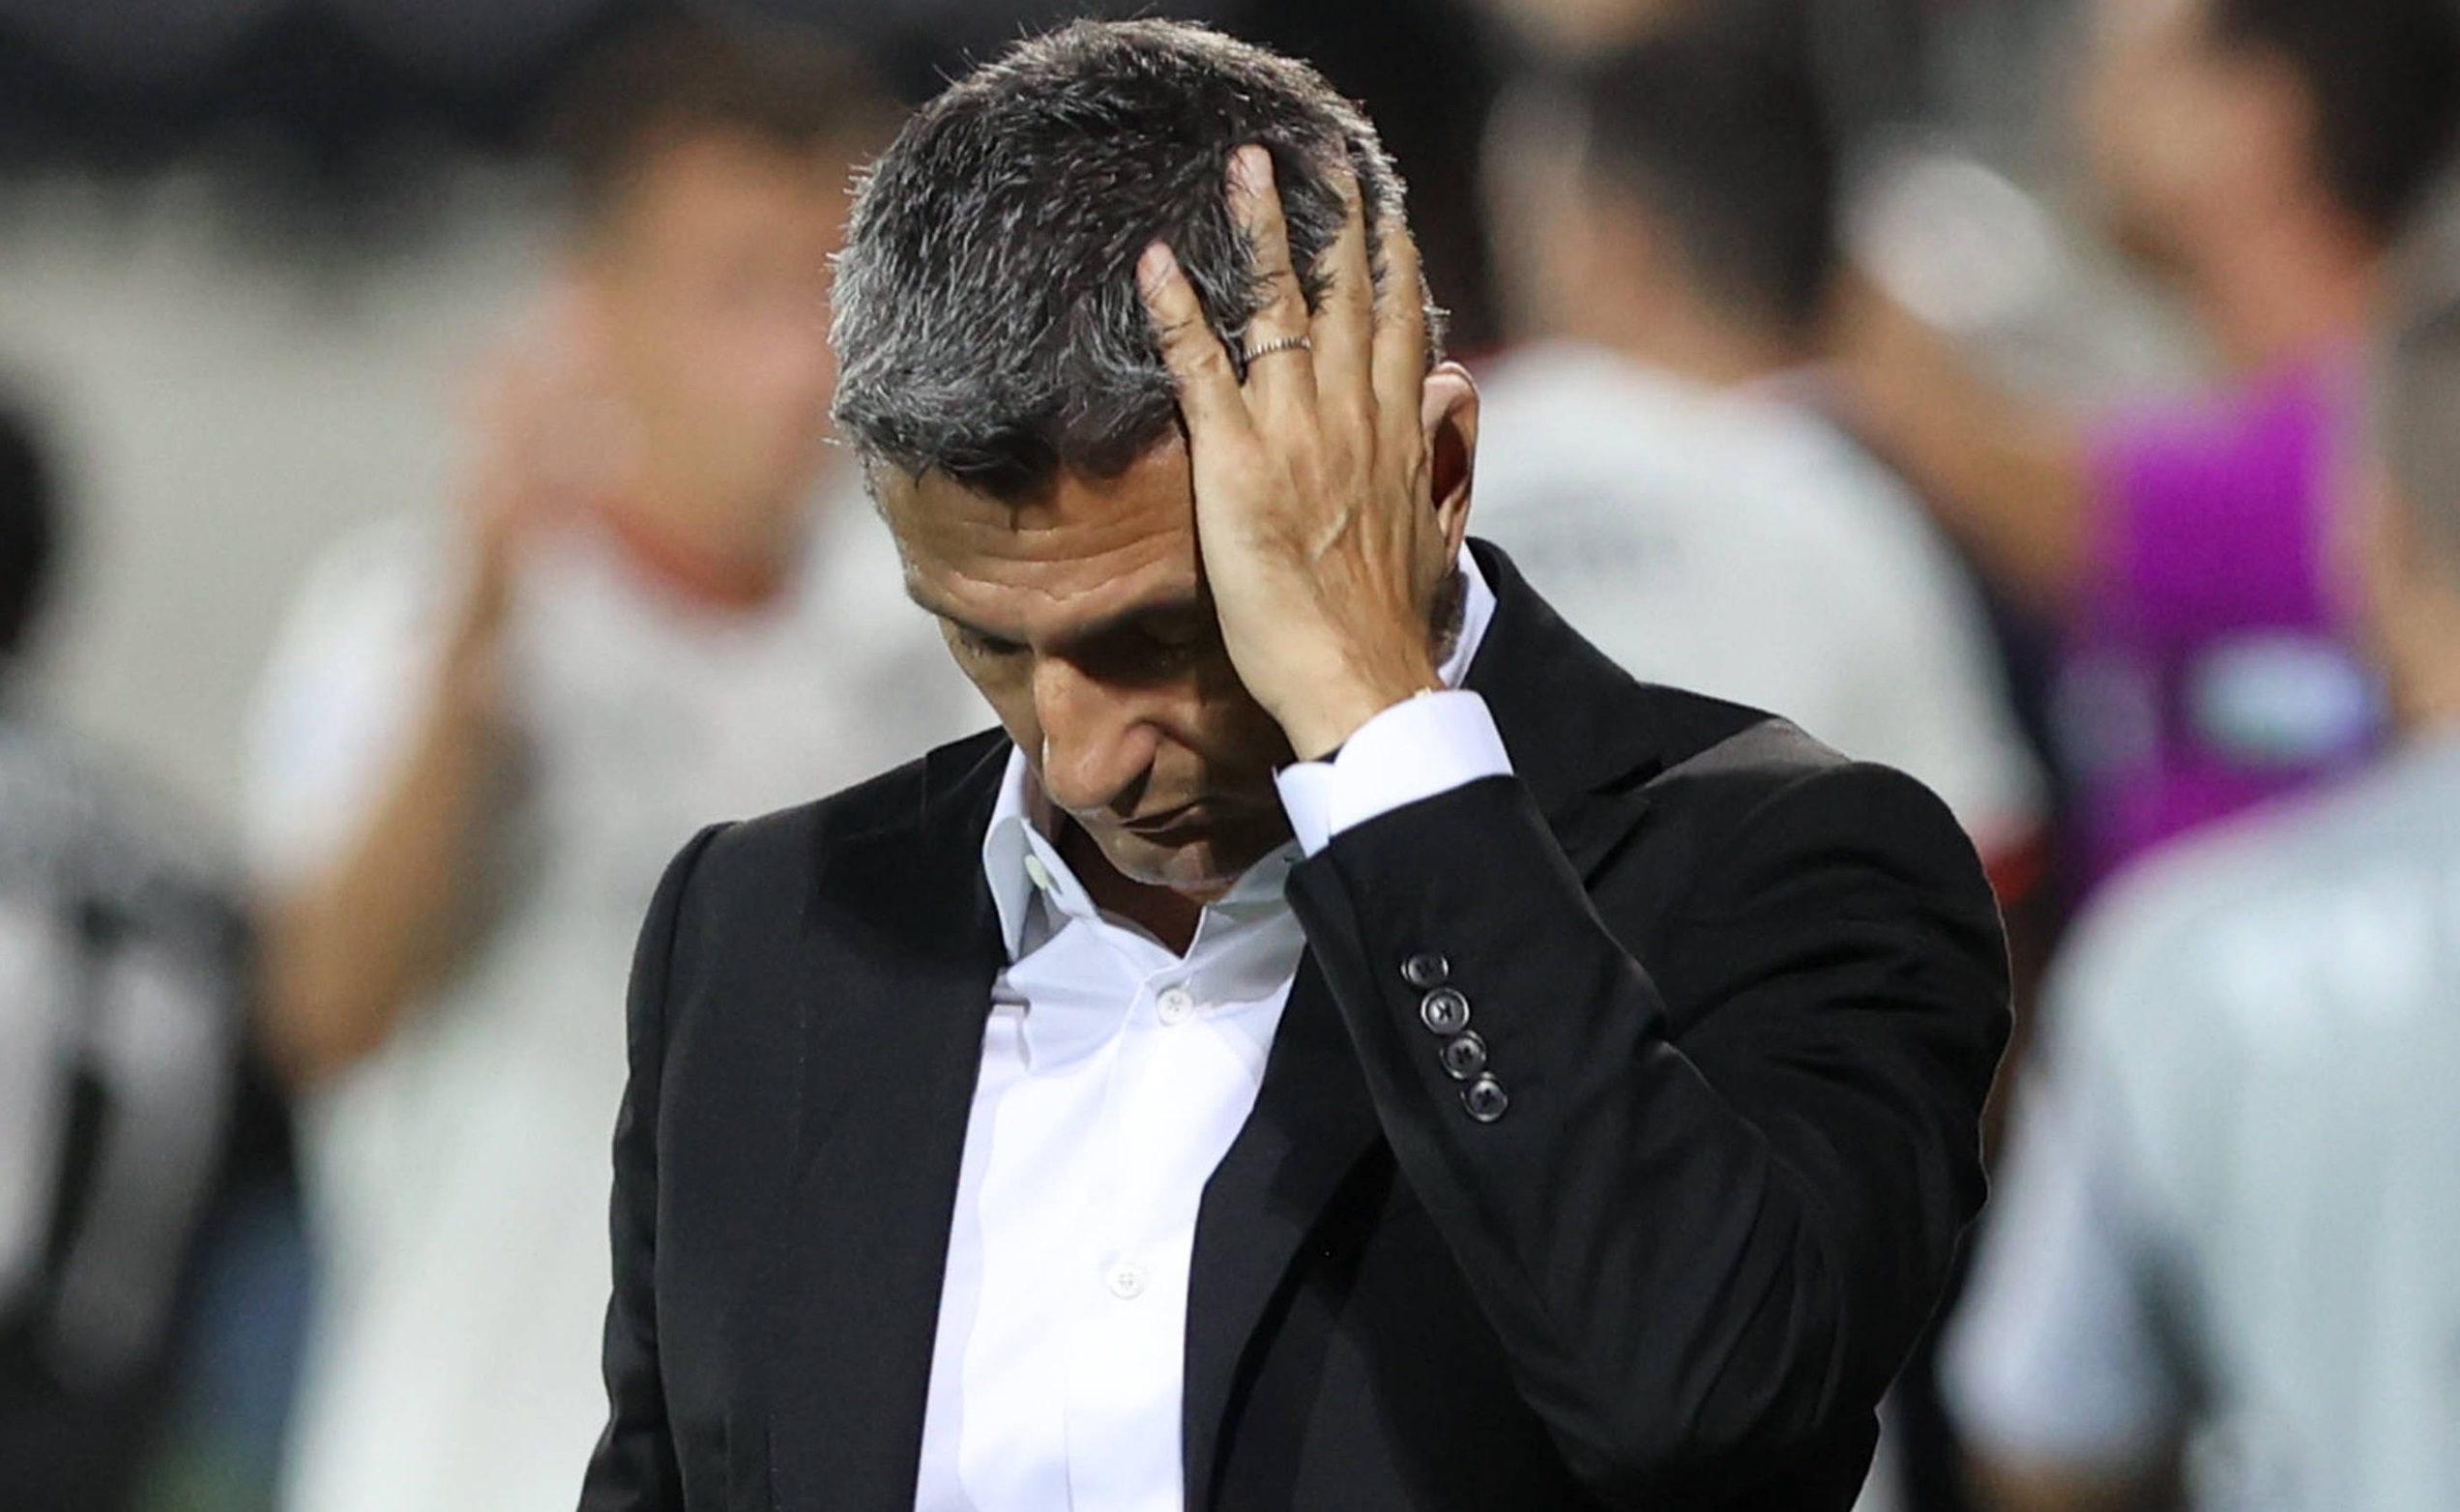 Adio, titlu?! Cum s-a încheiat ultimul meci disputat de PAOK-ul lui Răzvan Lucescu